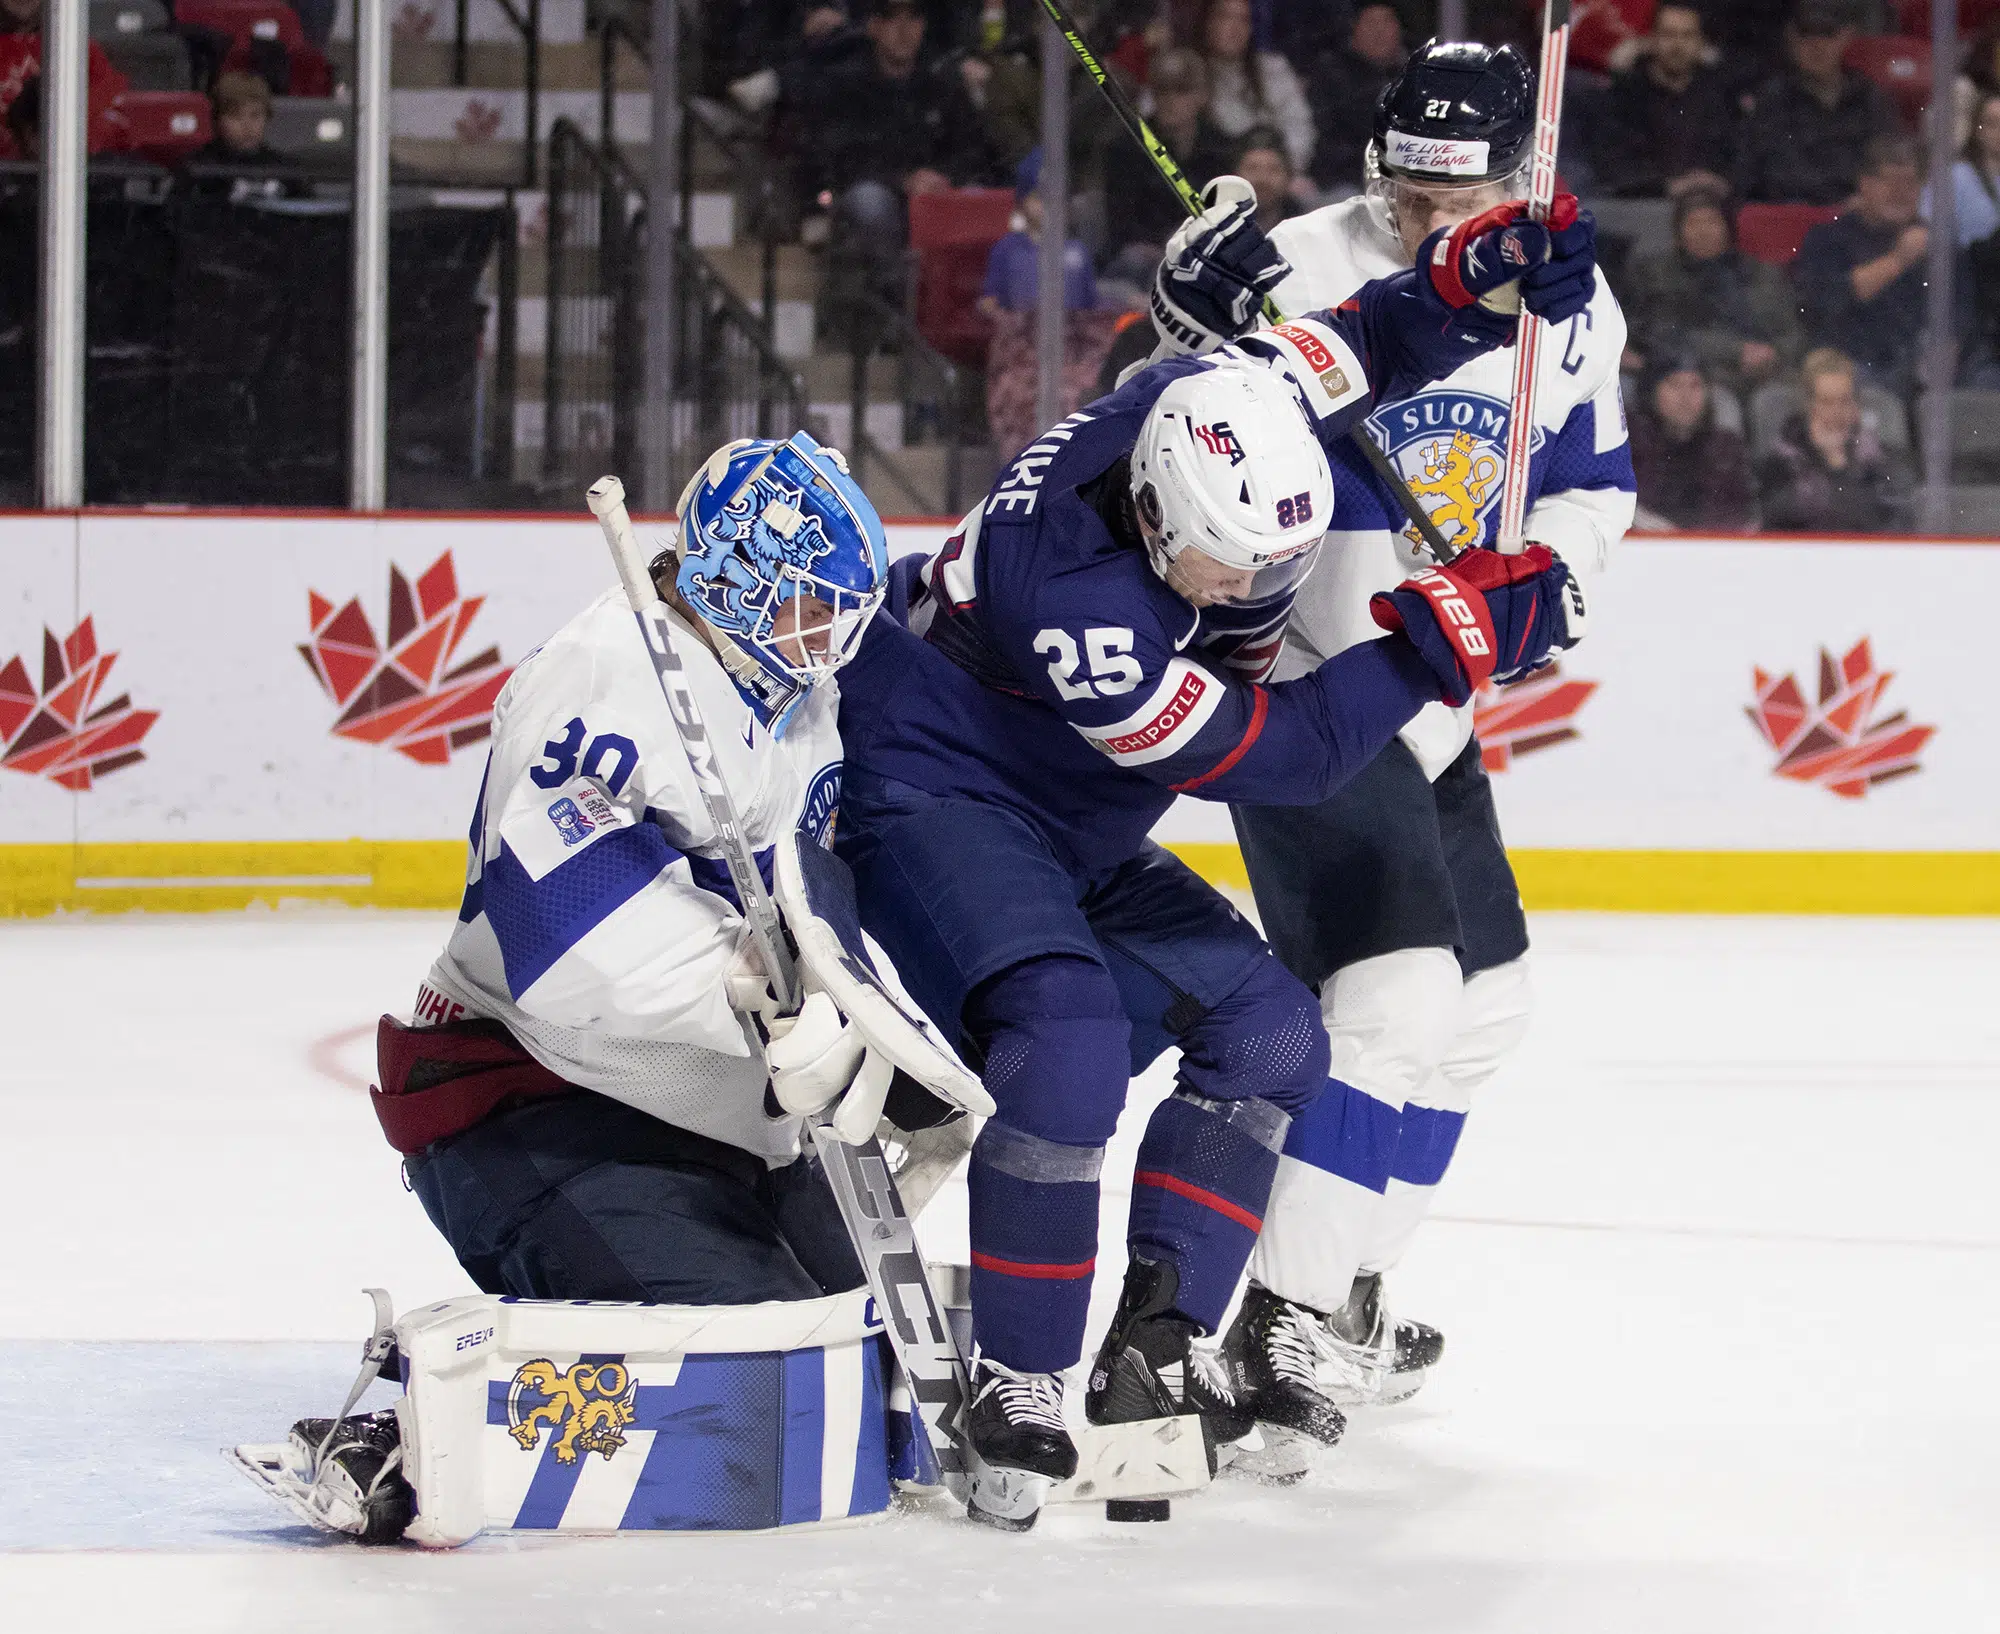 Spojené státy vyhrály skupinu B v juniorském hokeji, když porazily Finsko 6:2